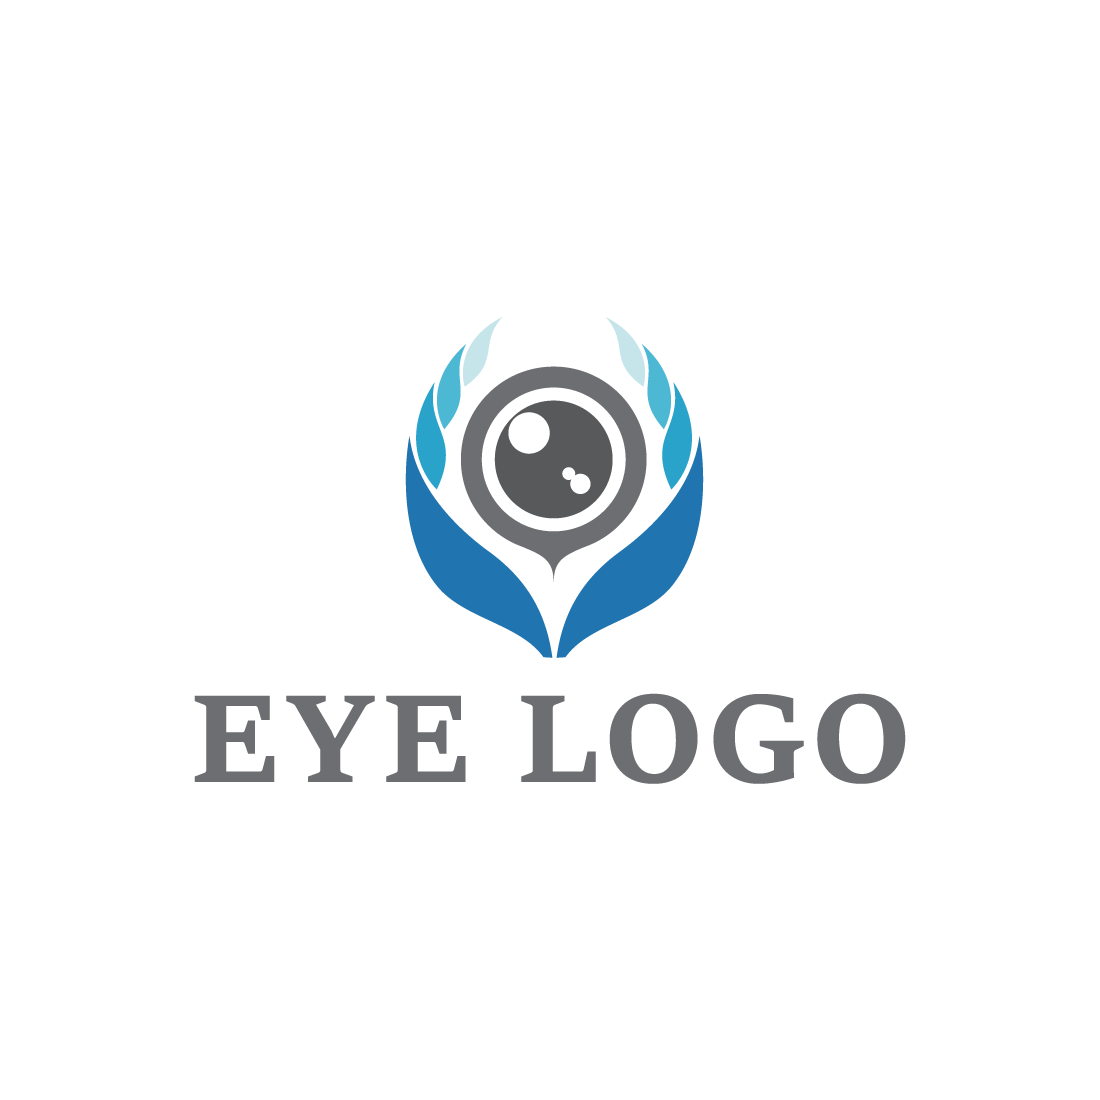 Creative Care Eye Concept Logo Design Template, Eye Care Logo Design  Vector, Icon Symbol Stock Vector - Illustration of eyeball, hand: 189816927